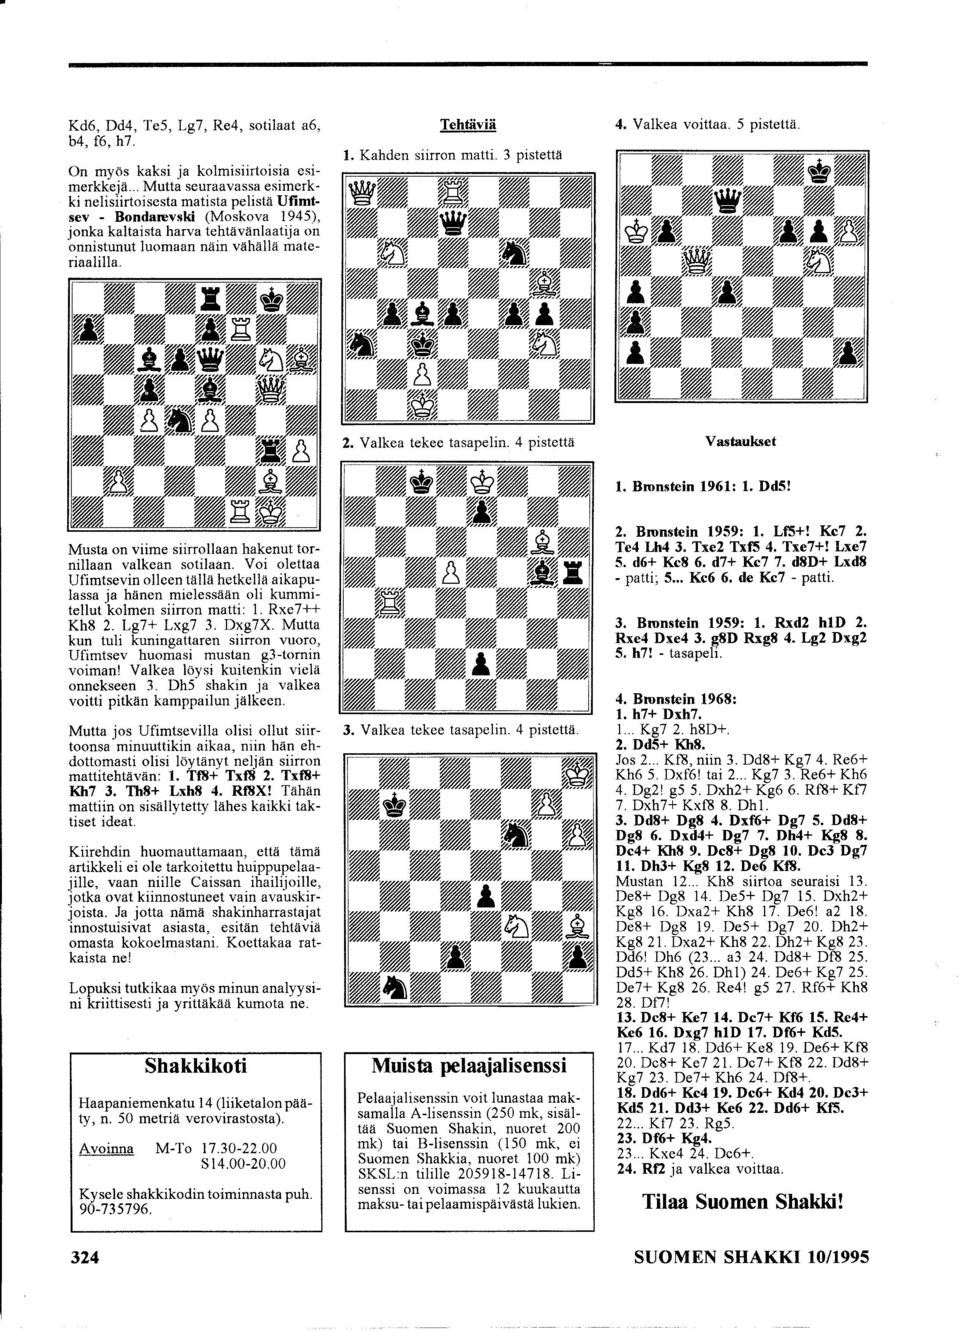 Tehtäviä 1. Kahden siirron matti. 3 pistettä 4. Valkea voittaa. 5 pistettä. Vastaukset 1. Bronstein 1961: 1. Dd5! Musta on viime siirrollaan hakenut tornillaan valkean sotilaan.